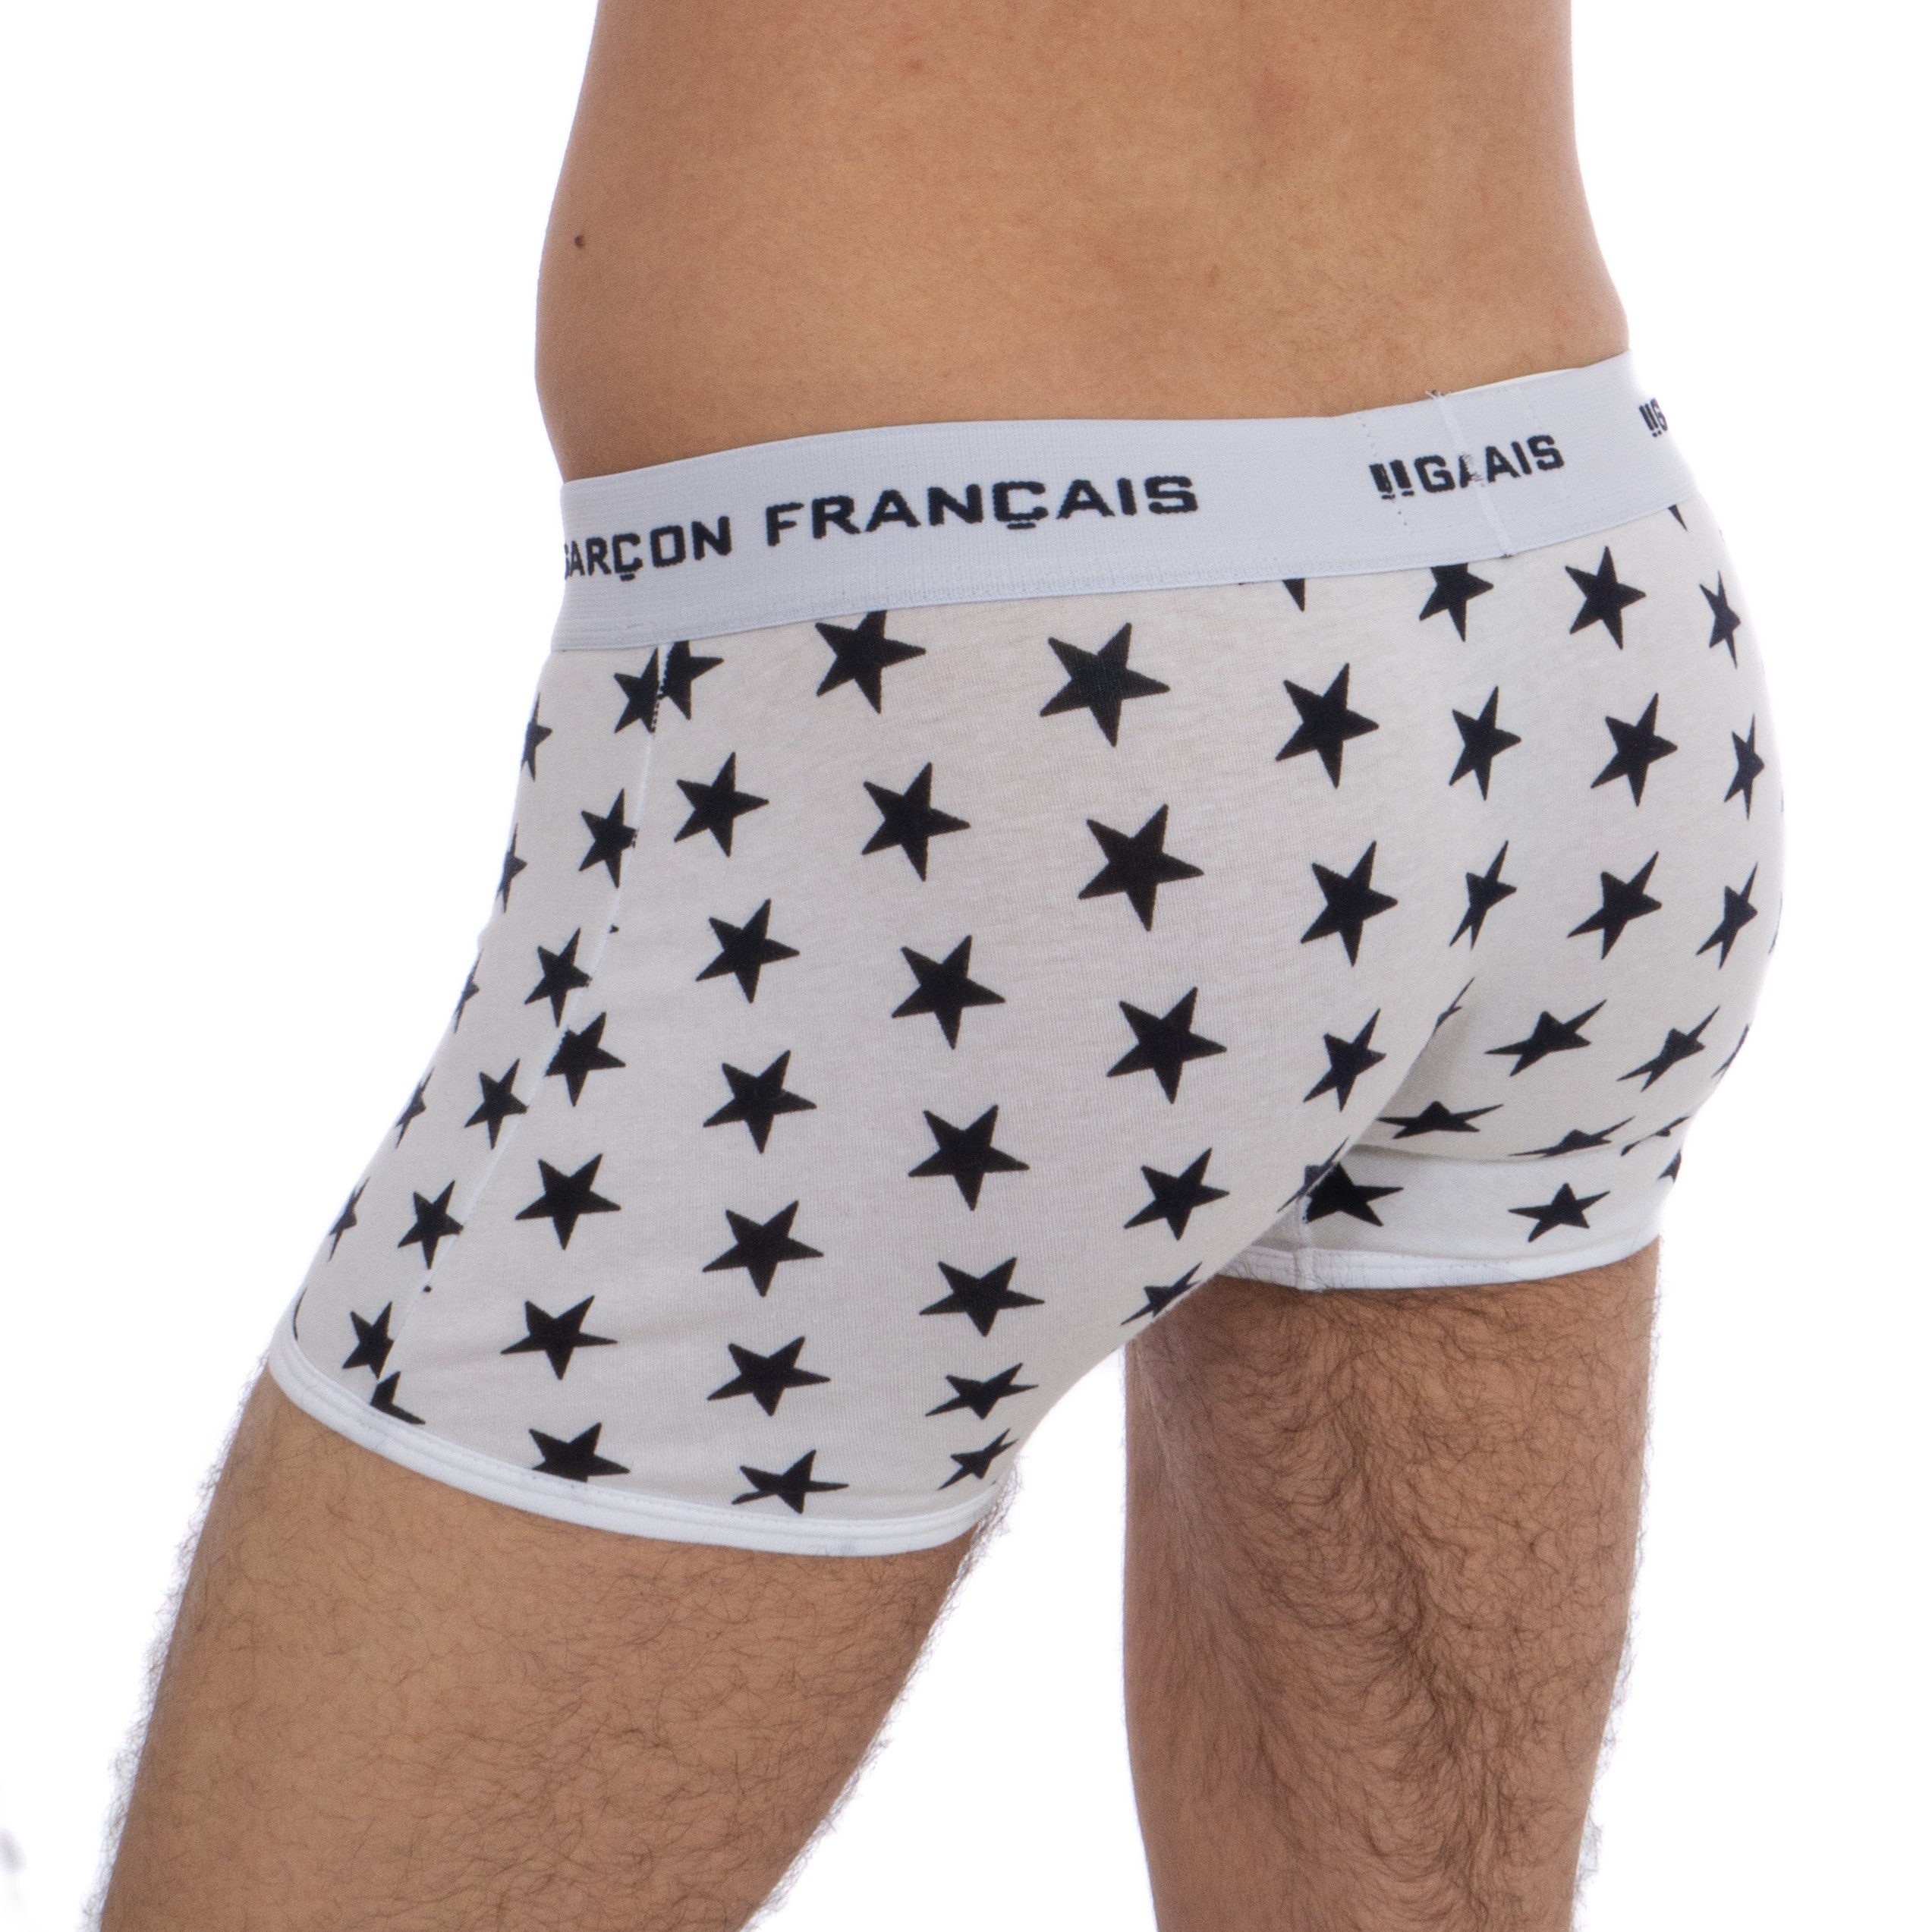 Long-star boxer - white - Garçon Français : sale of Boxer shorts, S...